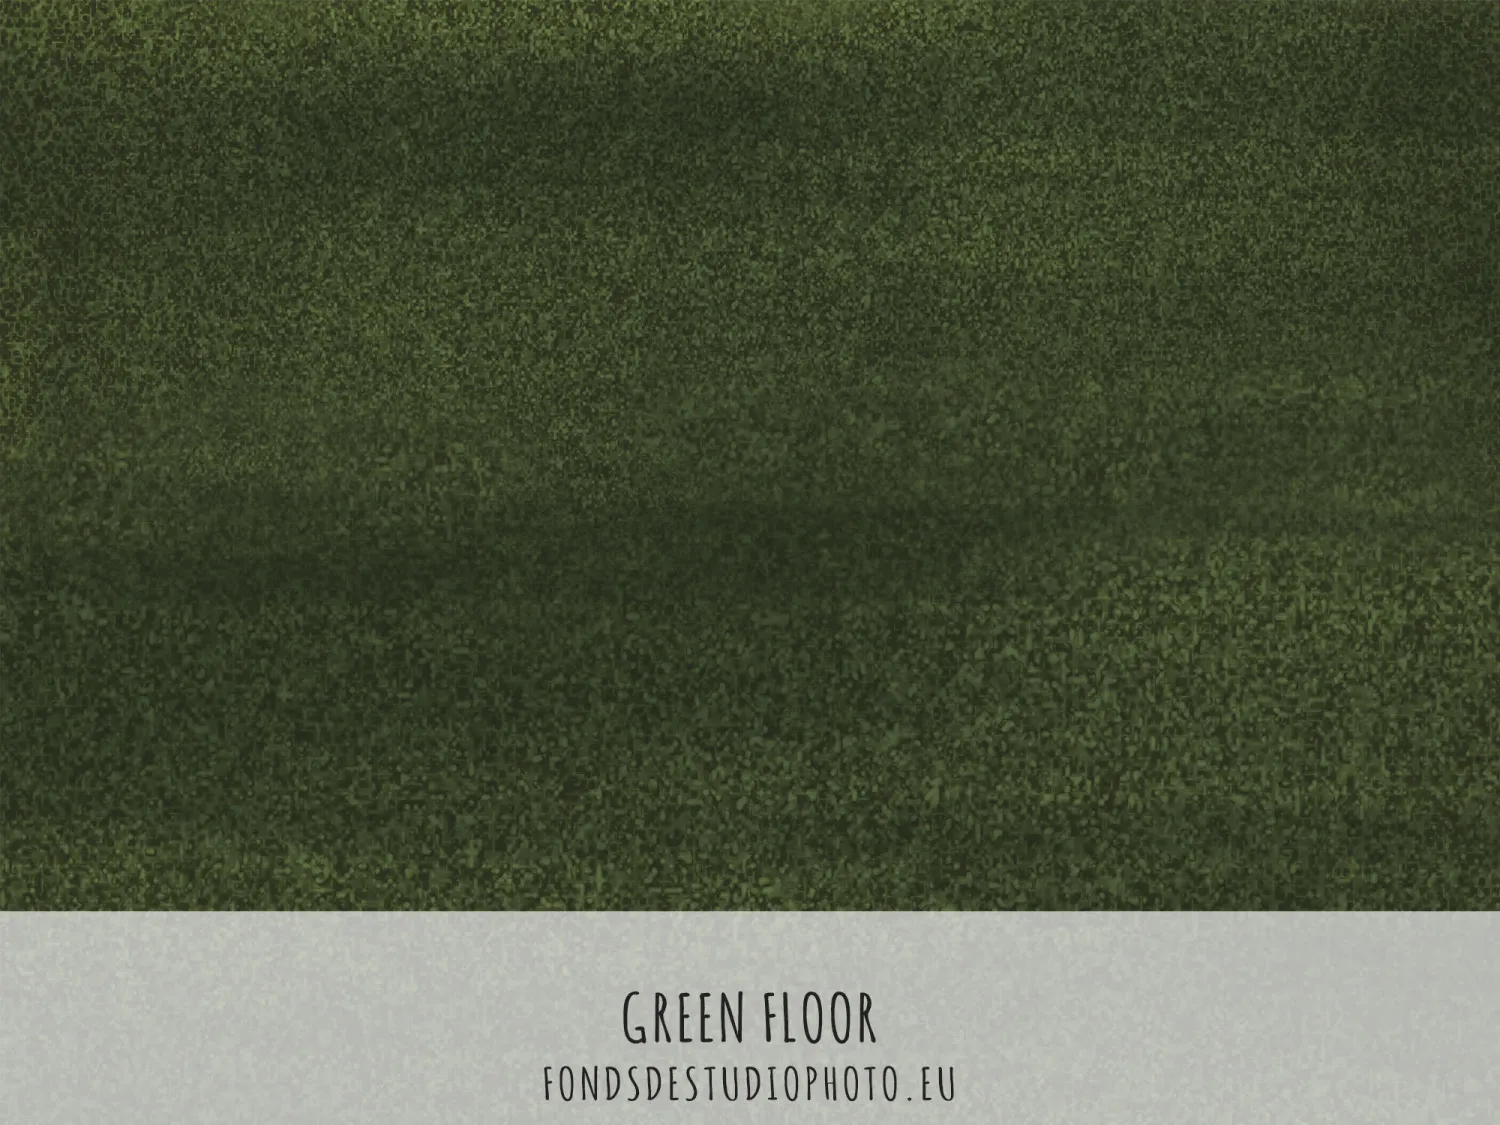 Green Floor